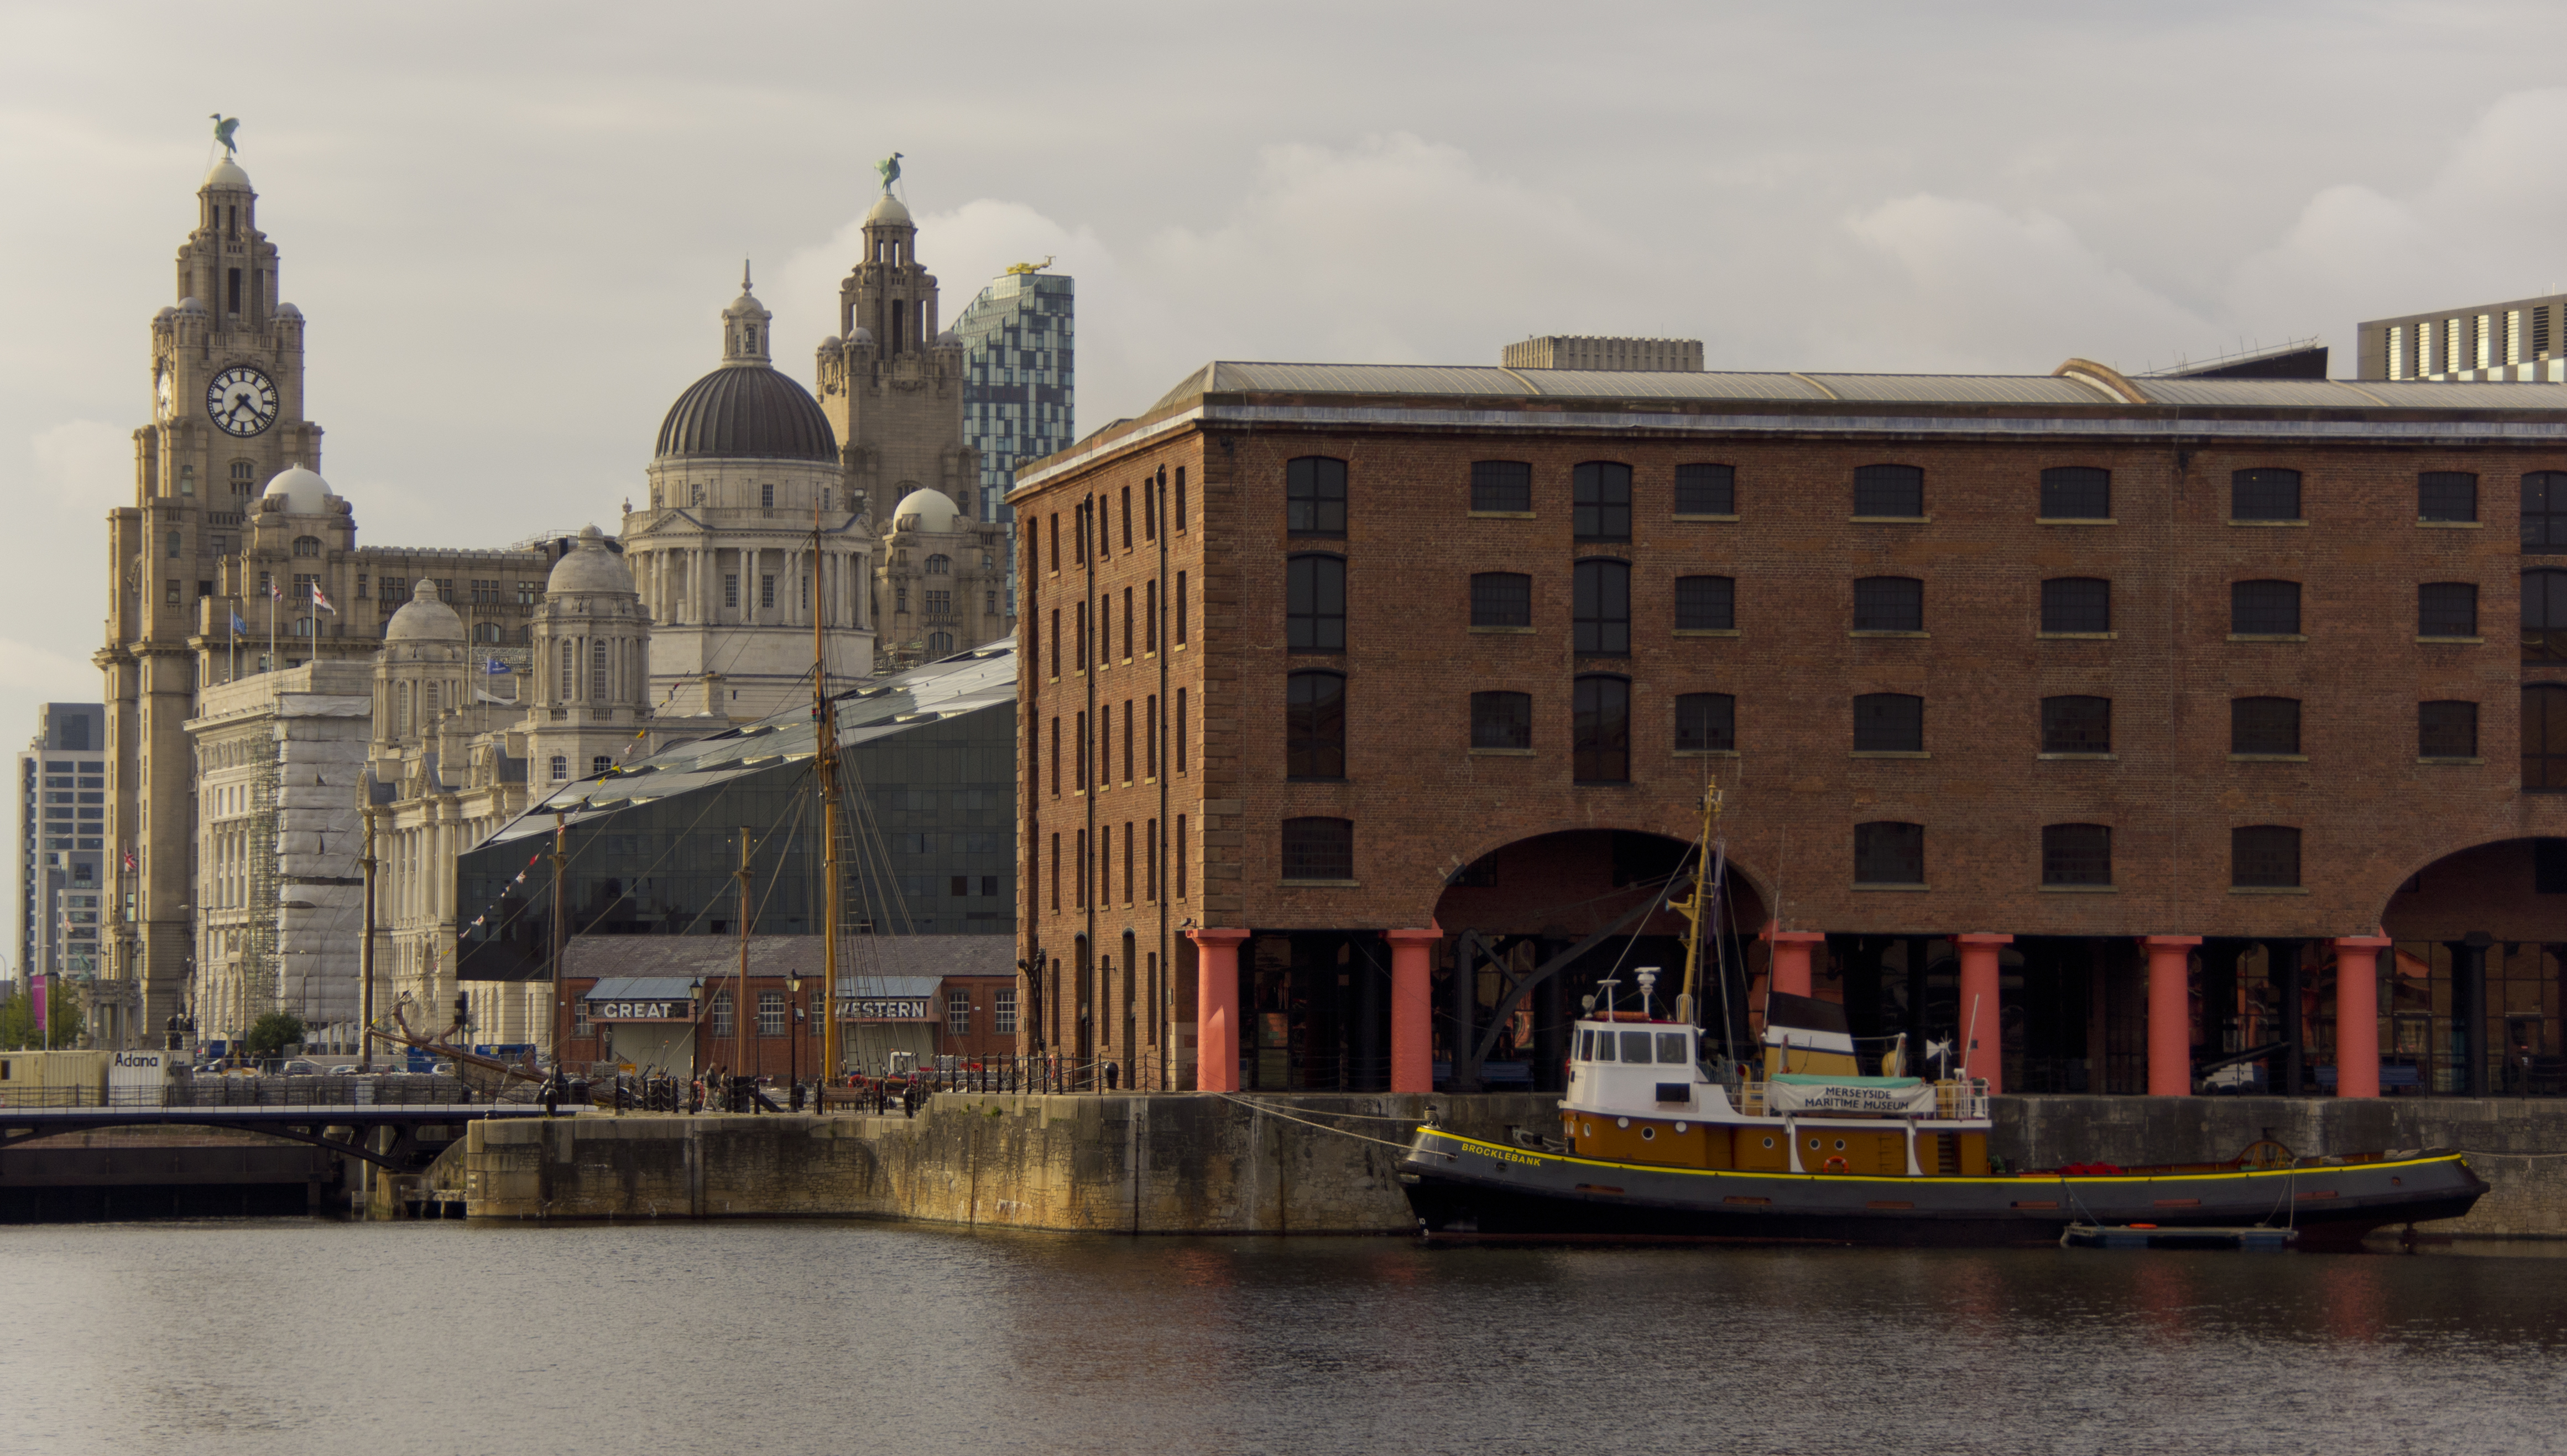 Liverpool Albert Docks © Barry Skeates, Flickr